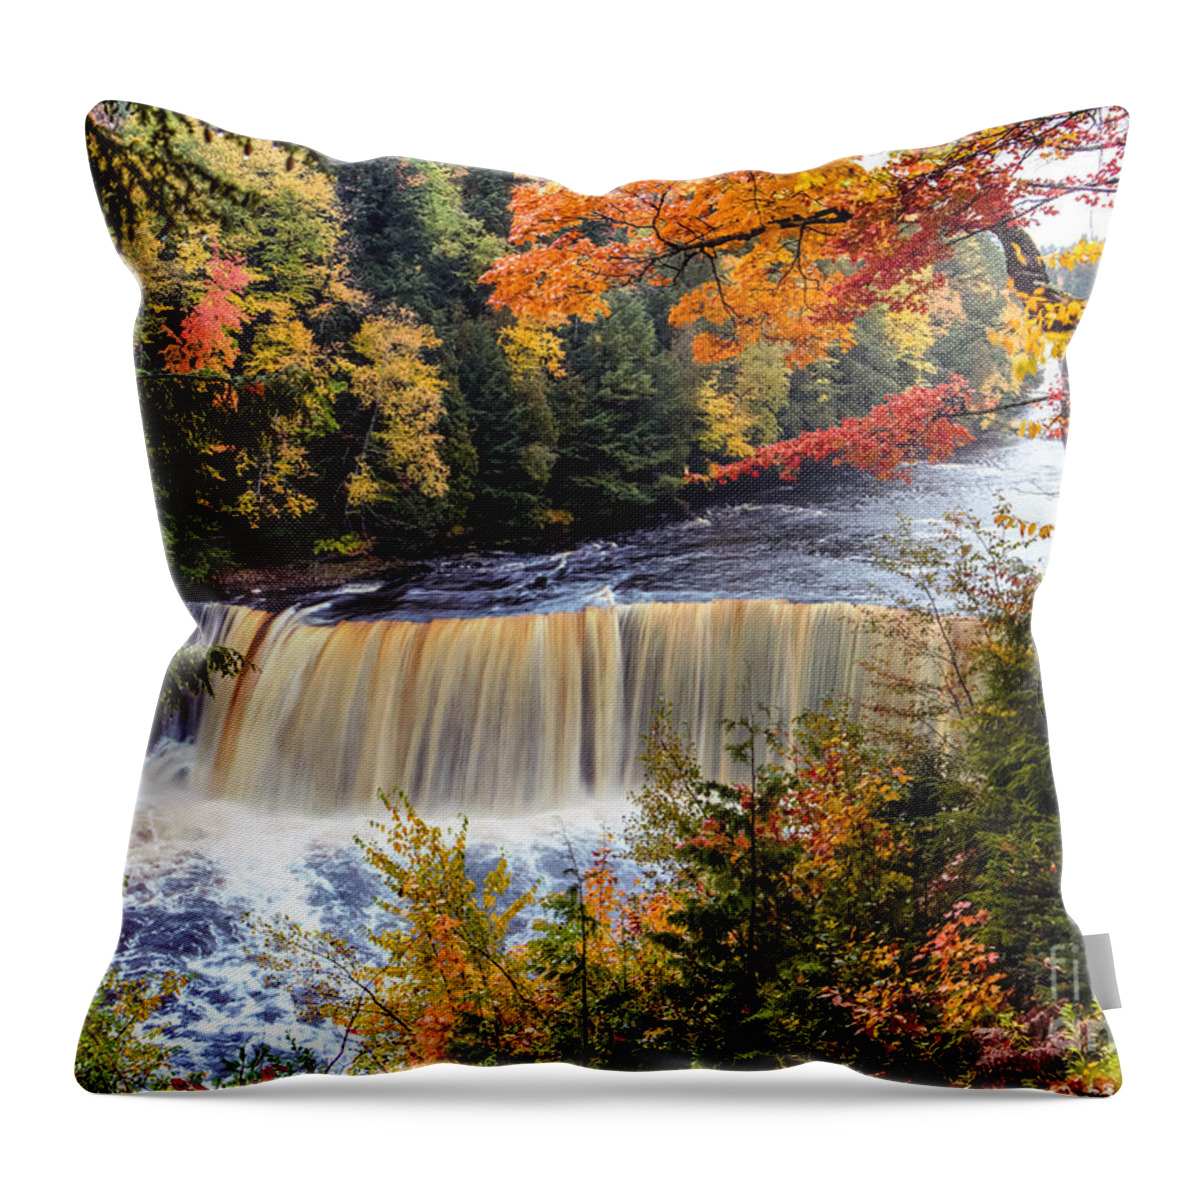 Upper Tahquamenon Falls Throw Pillow featuring the photograph Upper Tahquamenon Waterfalls On An Autumn Day by Norris Seward